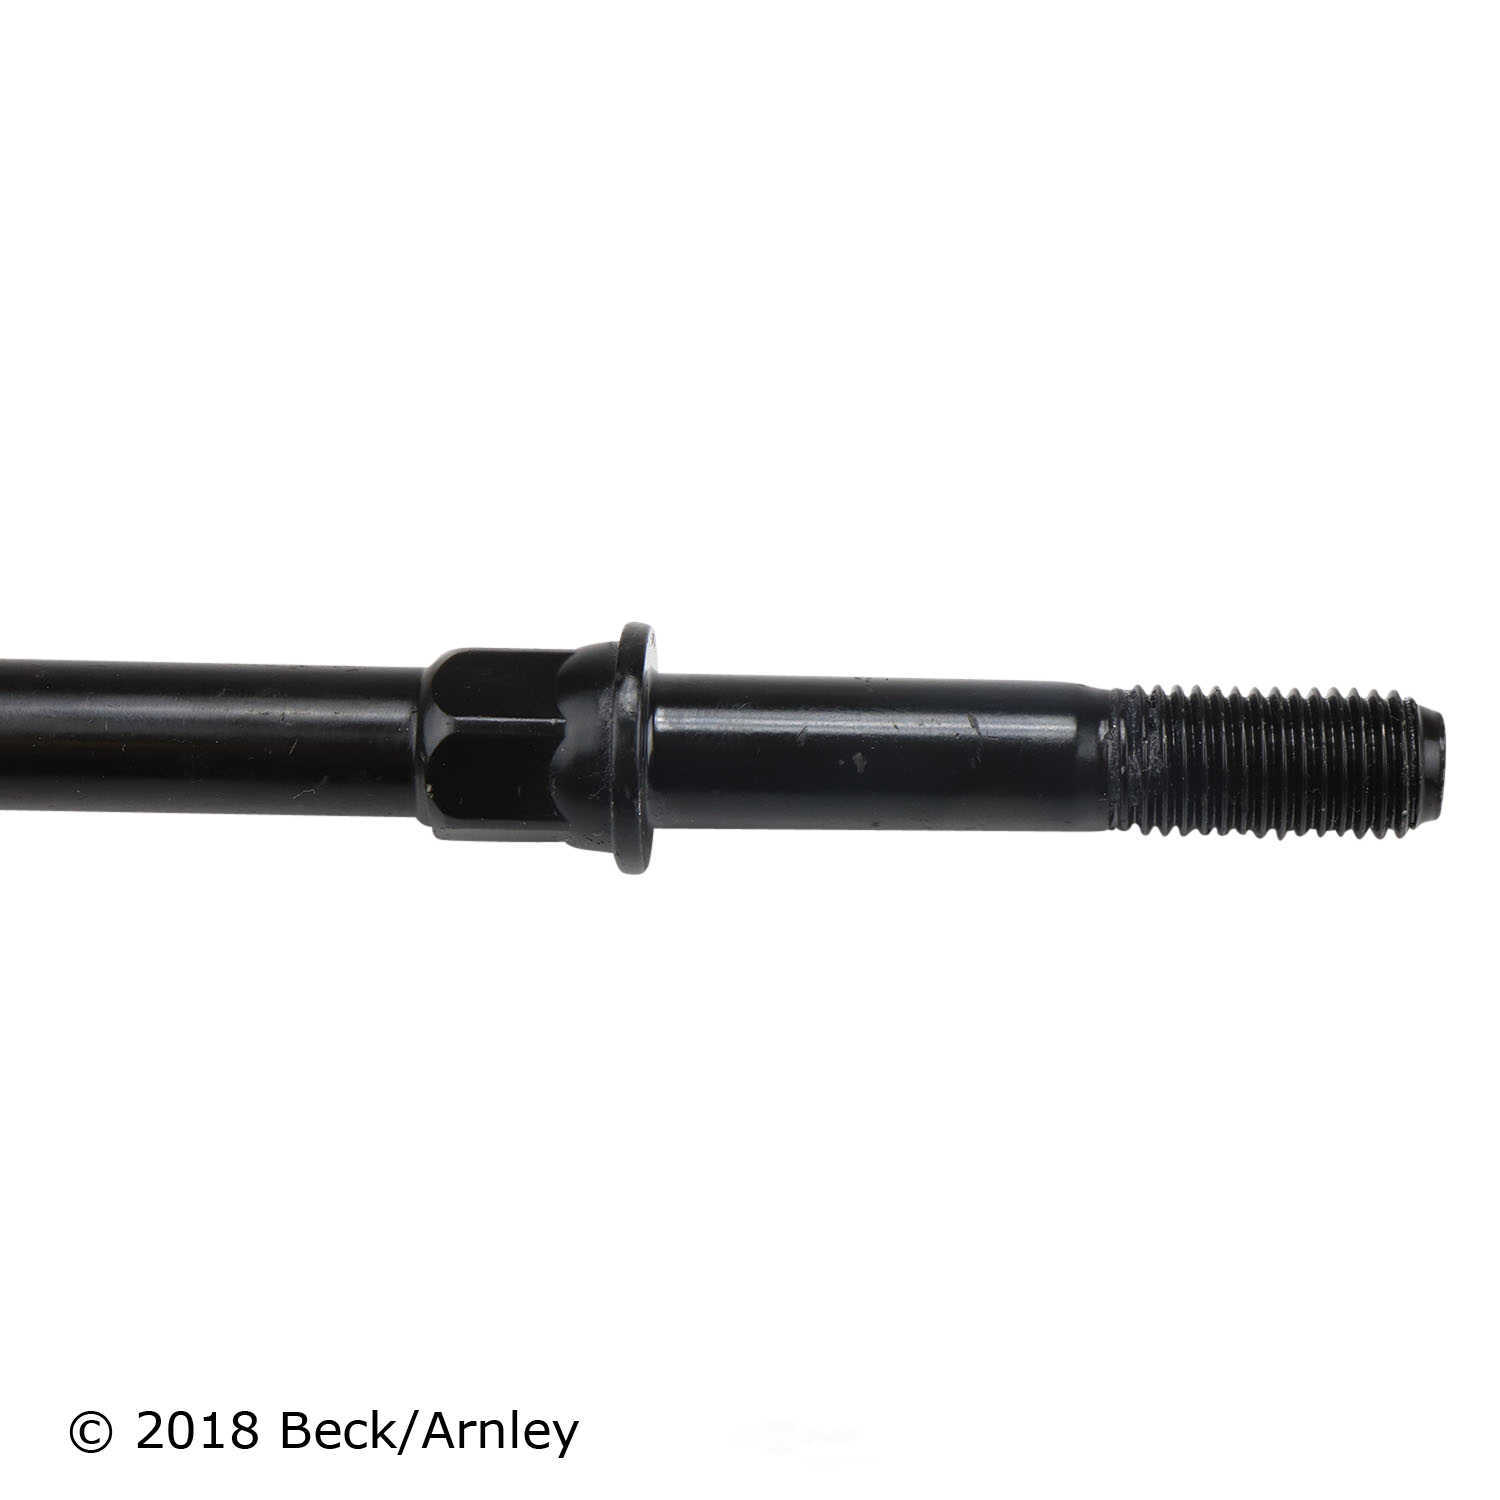 BECK/ARNLEY - Suspension Stabilizer Bar Link Kit - BAR 101-4383